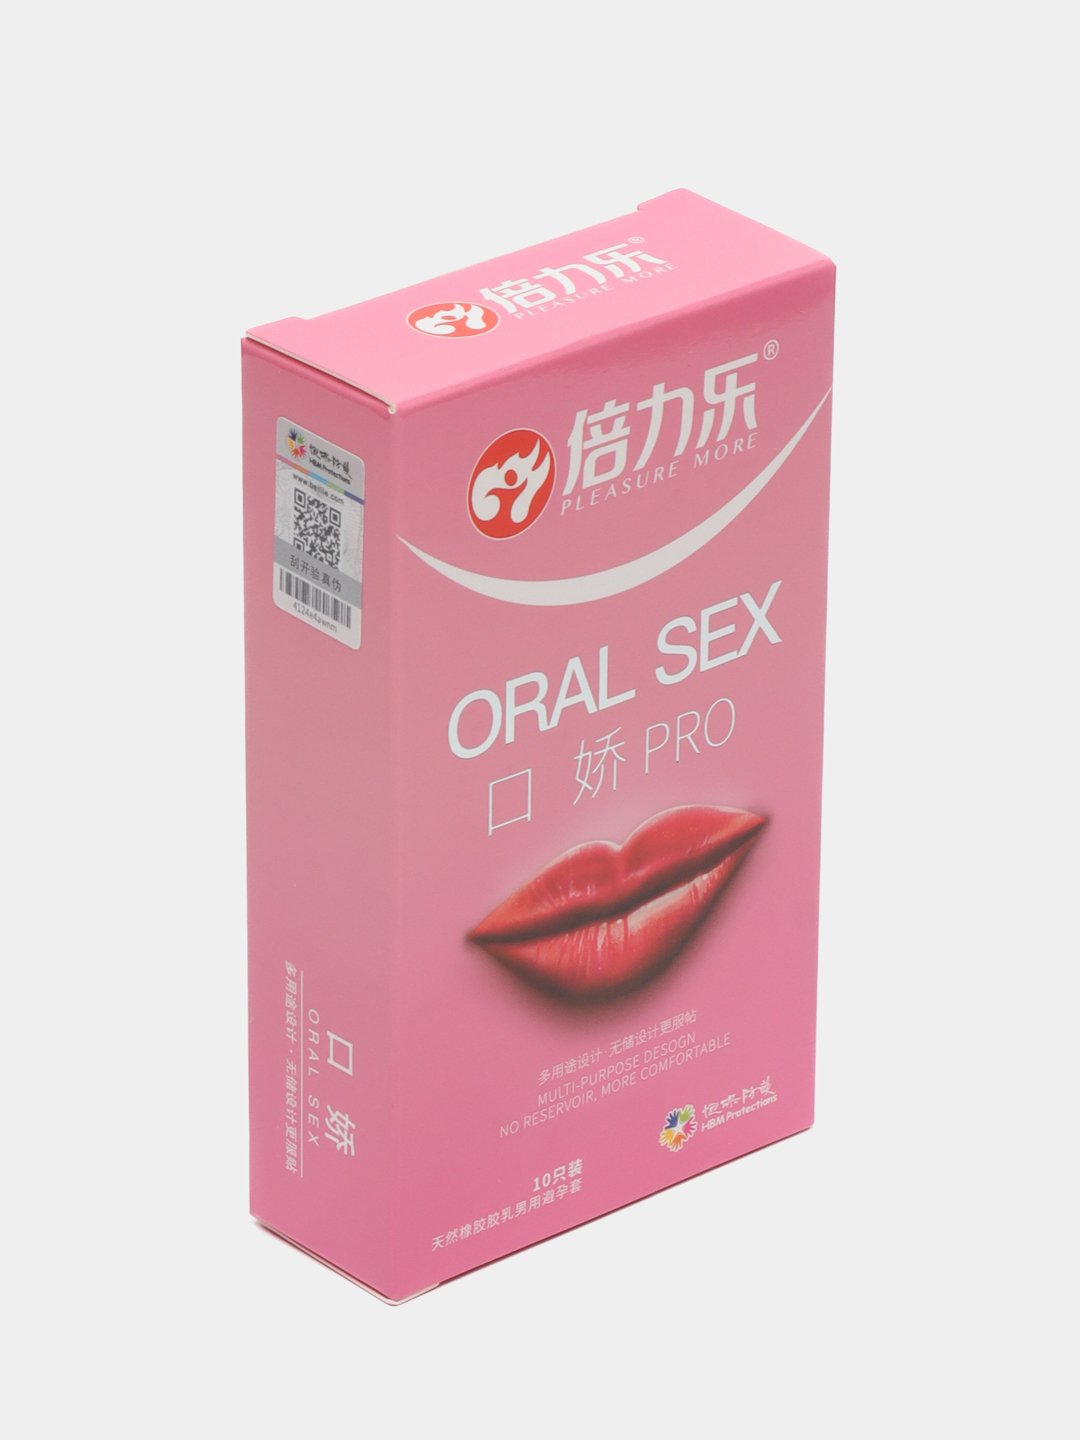 Презервативы для орального секса: множество вкусов | интернет-витрина Luxlite